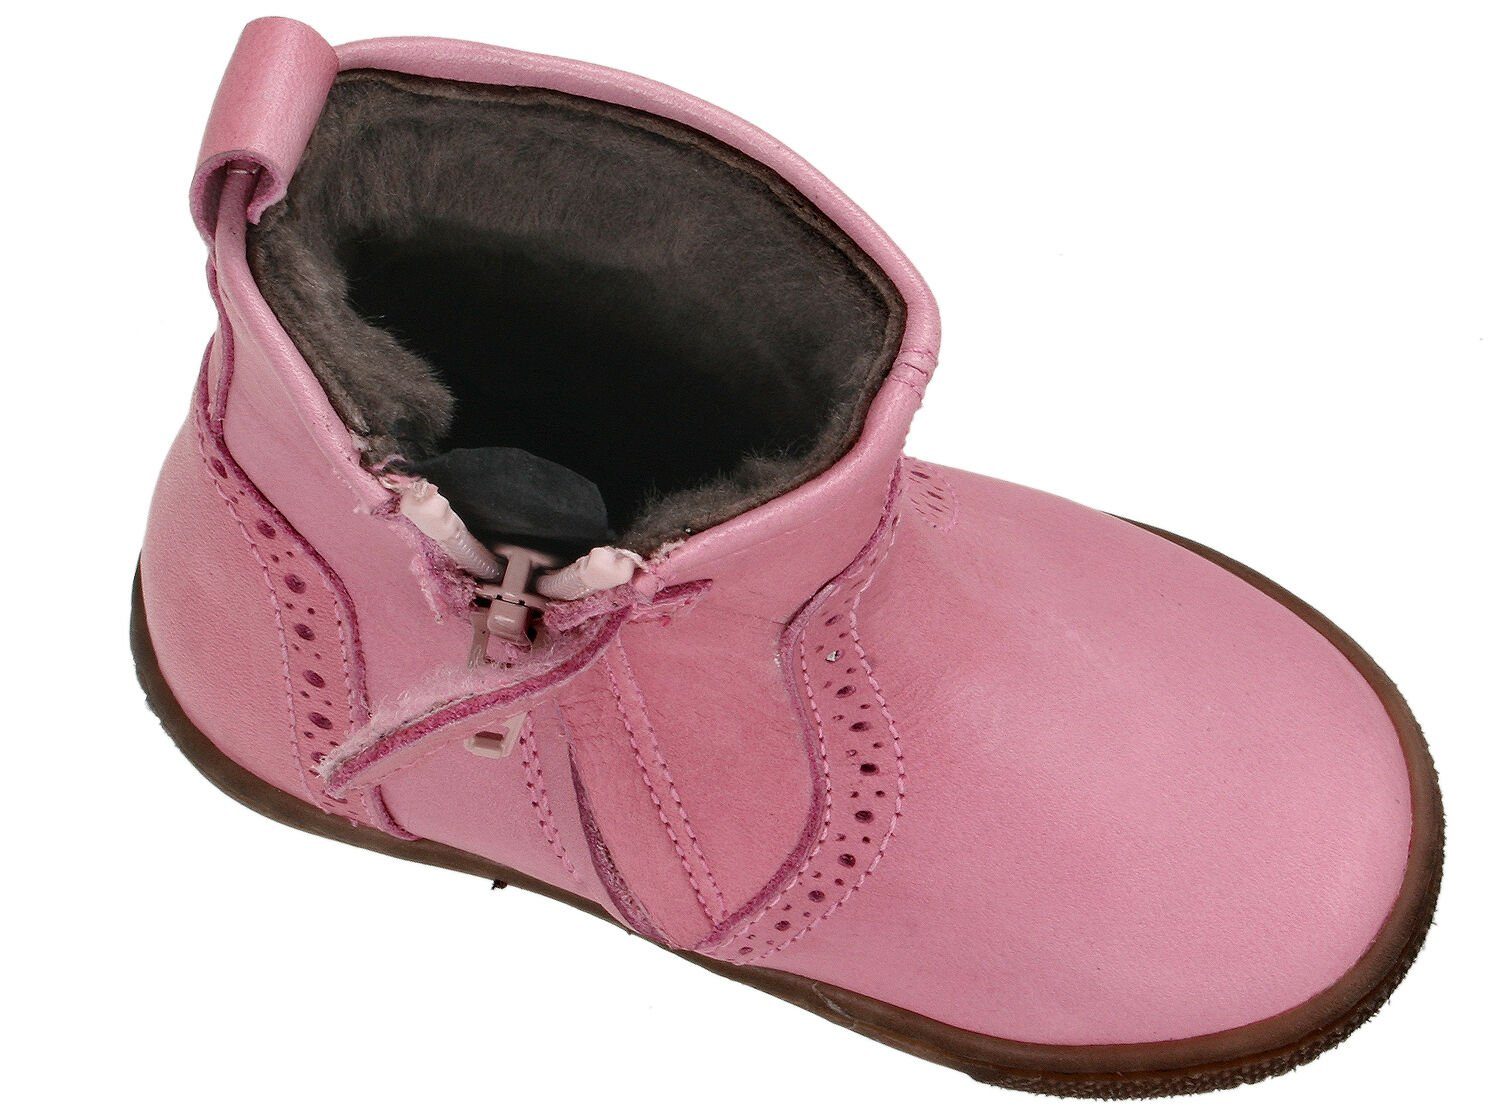 Lammfell Boots Lauflern Schnürstiefelette Mädchen 9069 Clic Clic! Leder Schuhe Stiefel